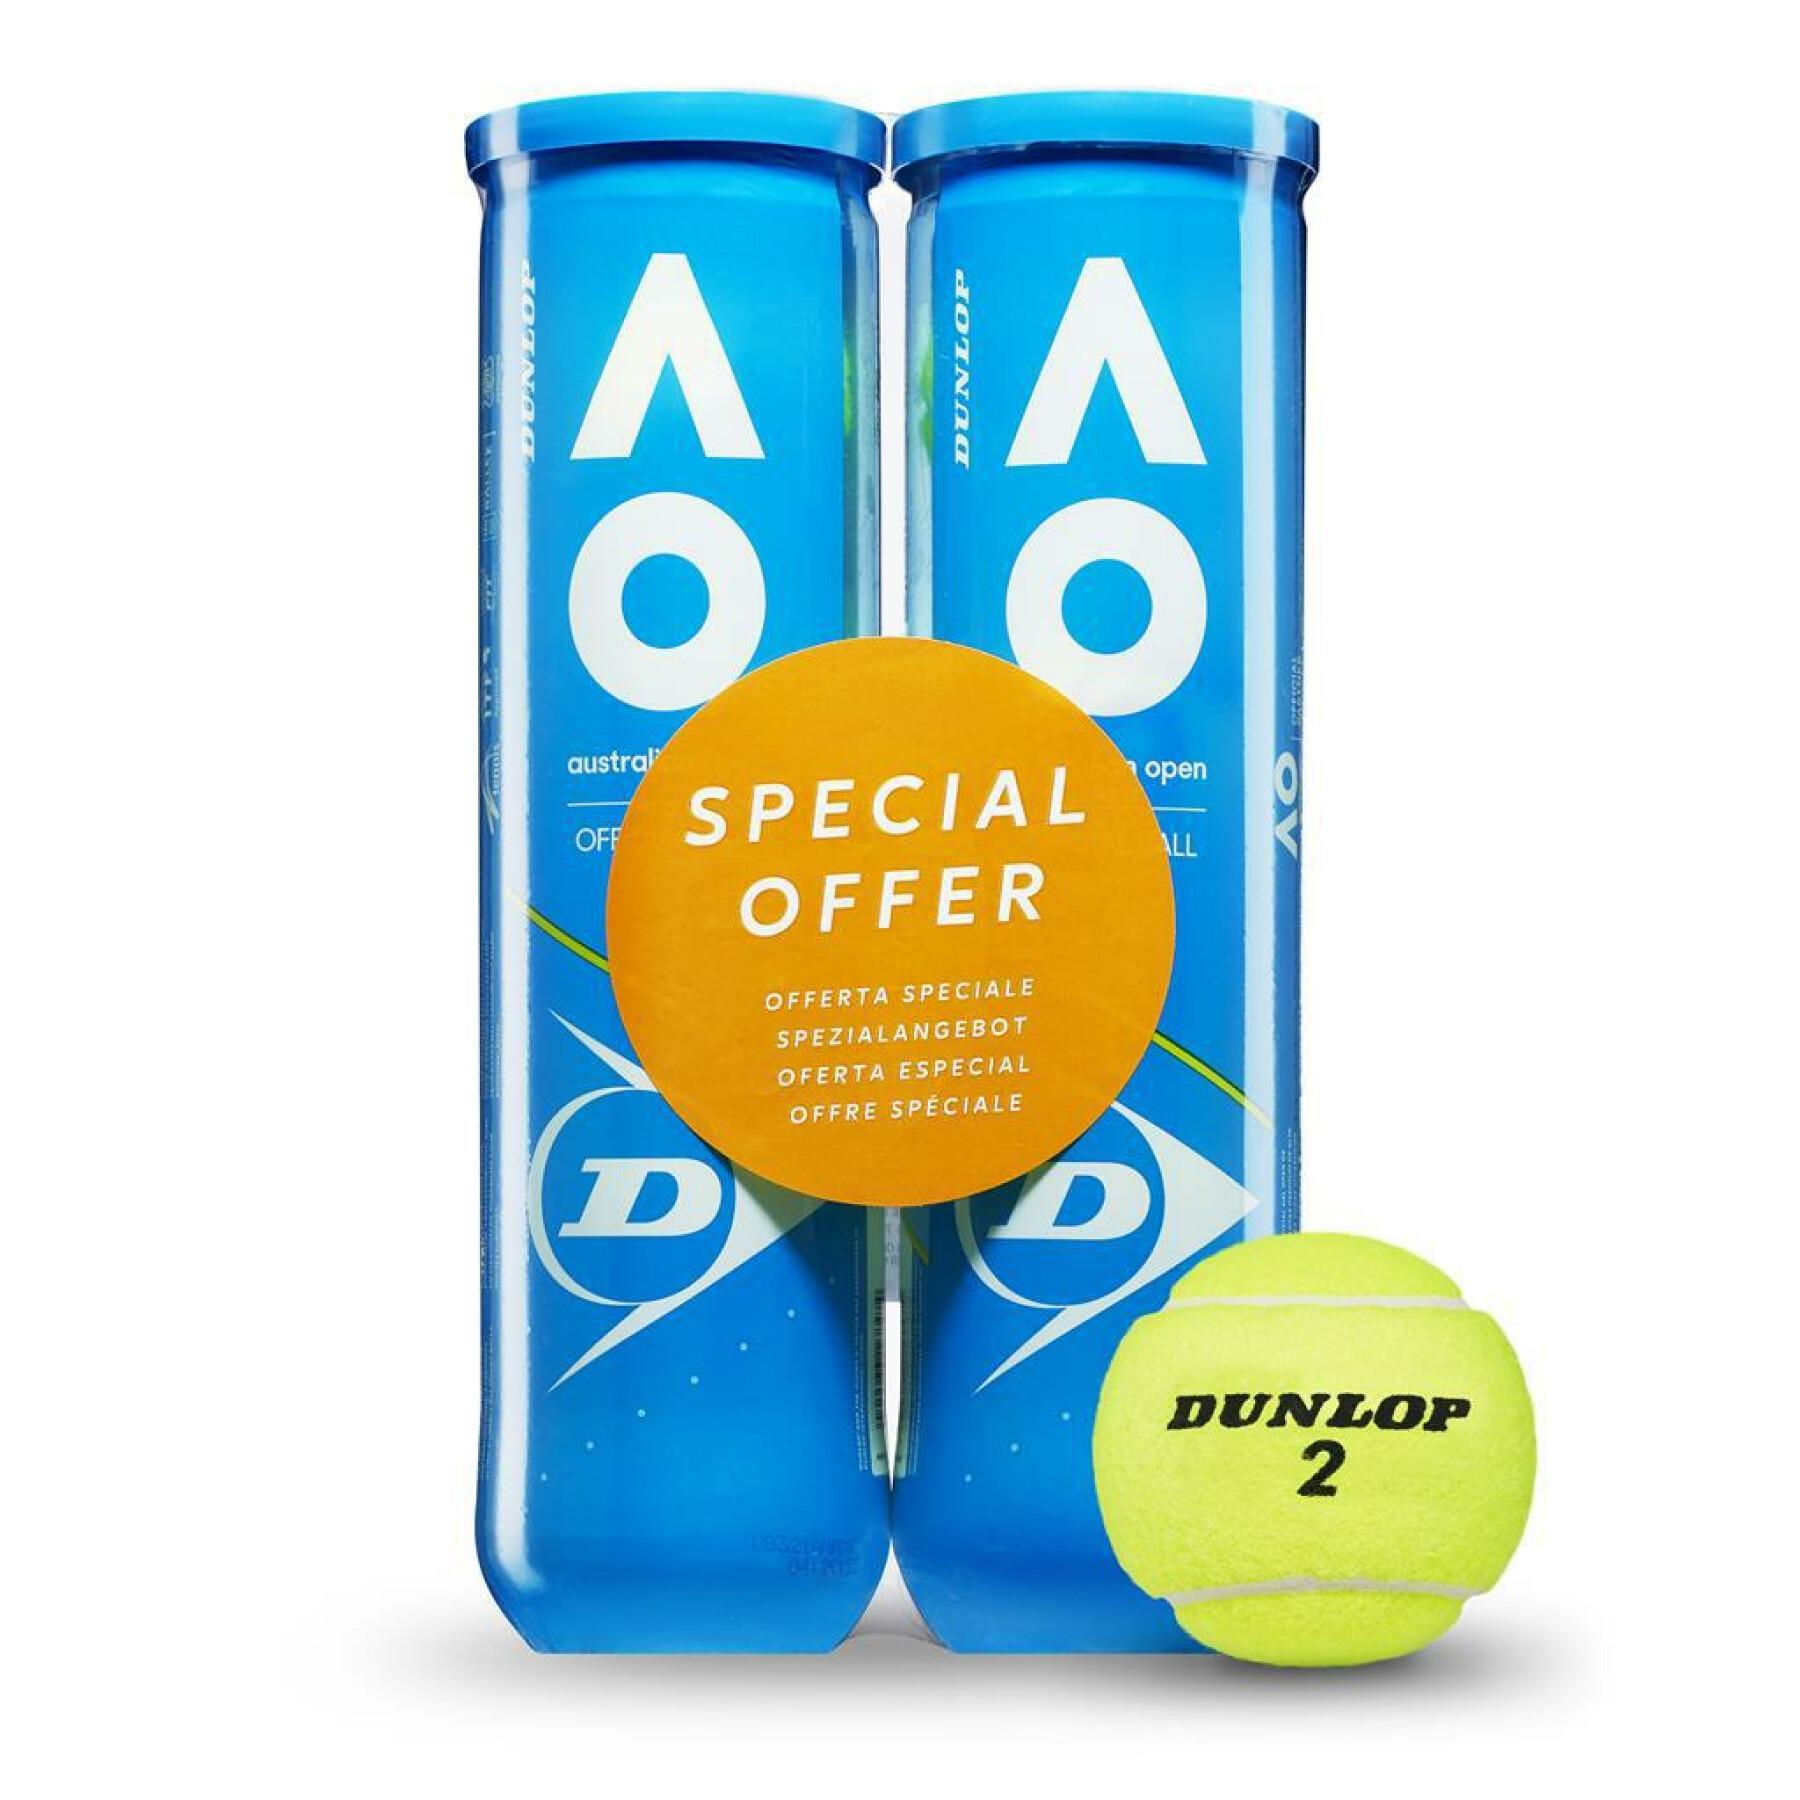 Conjunto de 2 tubos de 4 bolas de ténis Dunlop australian open